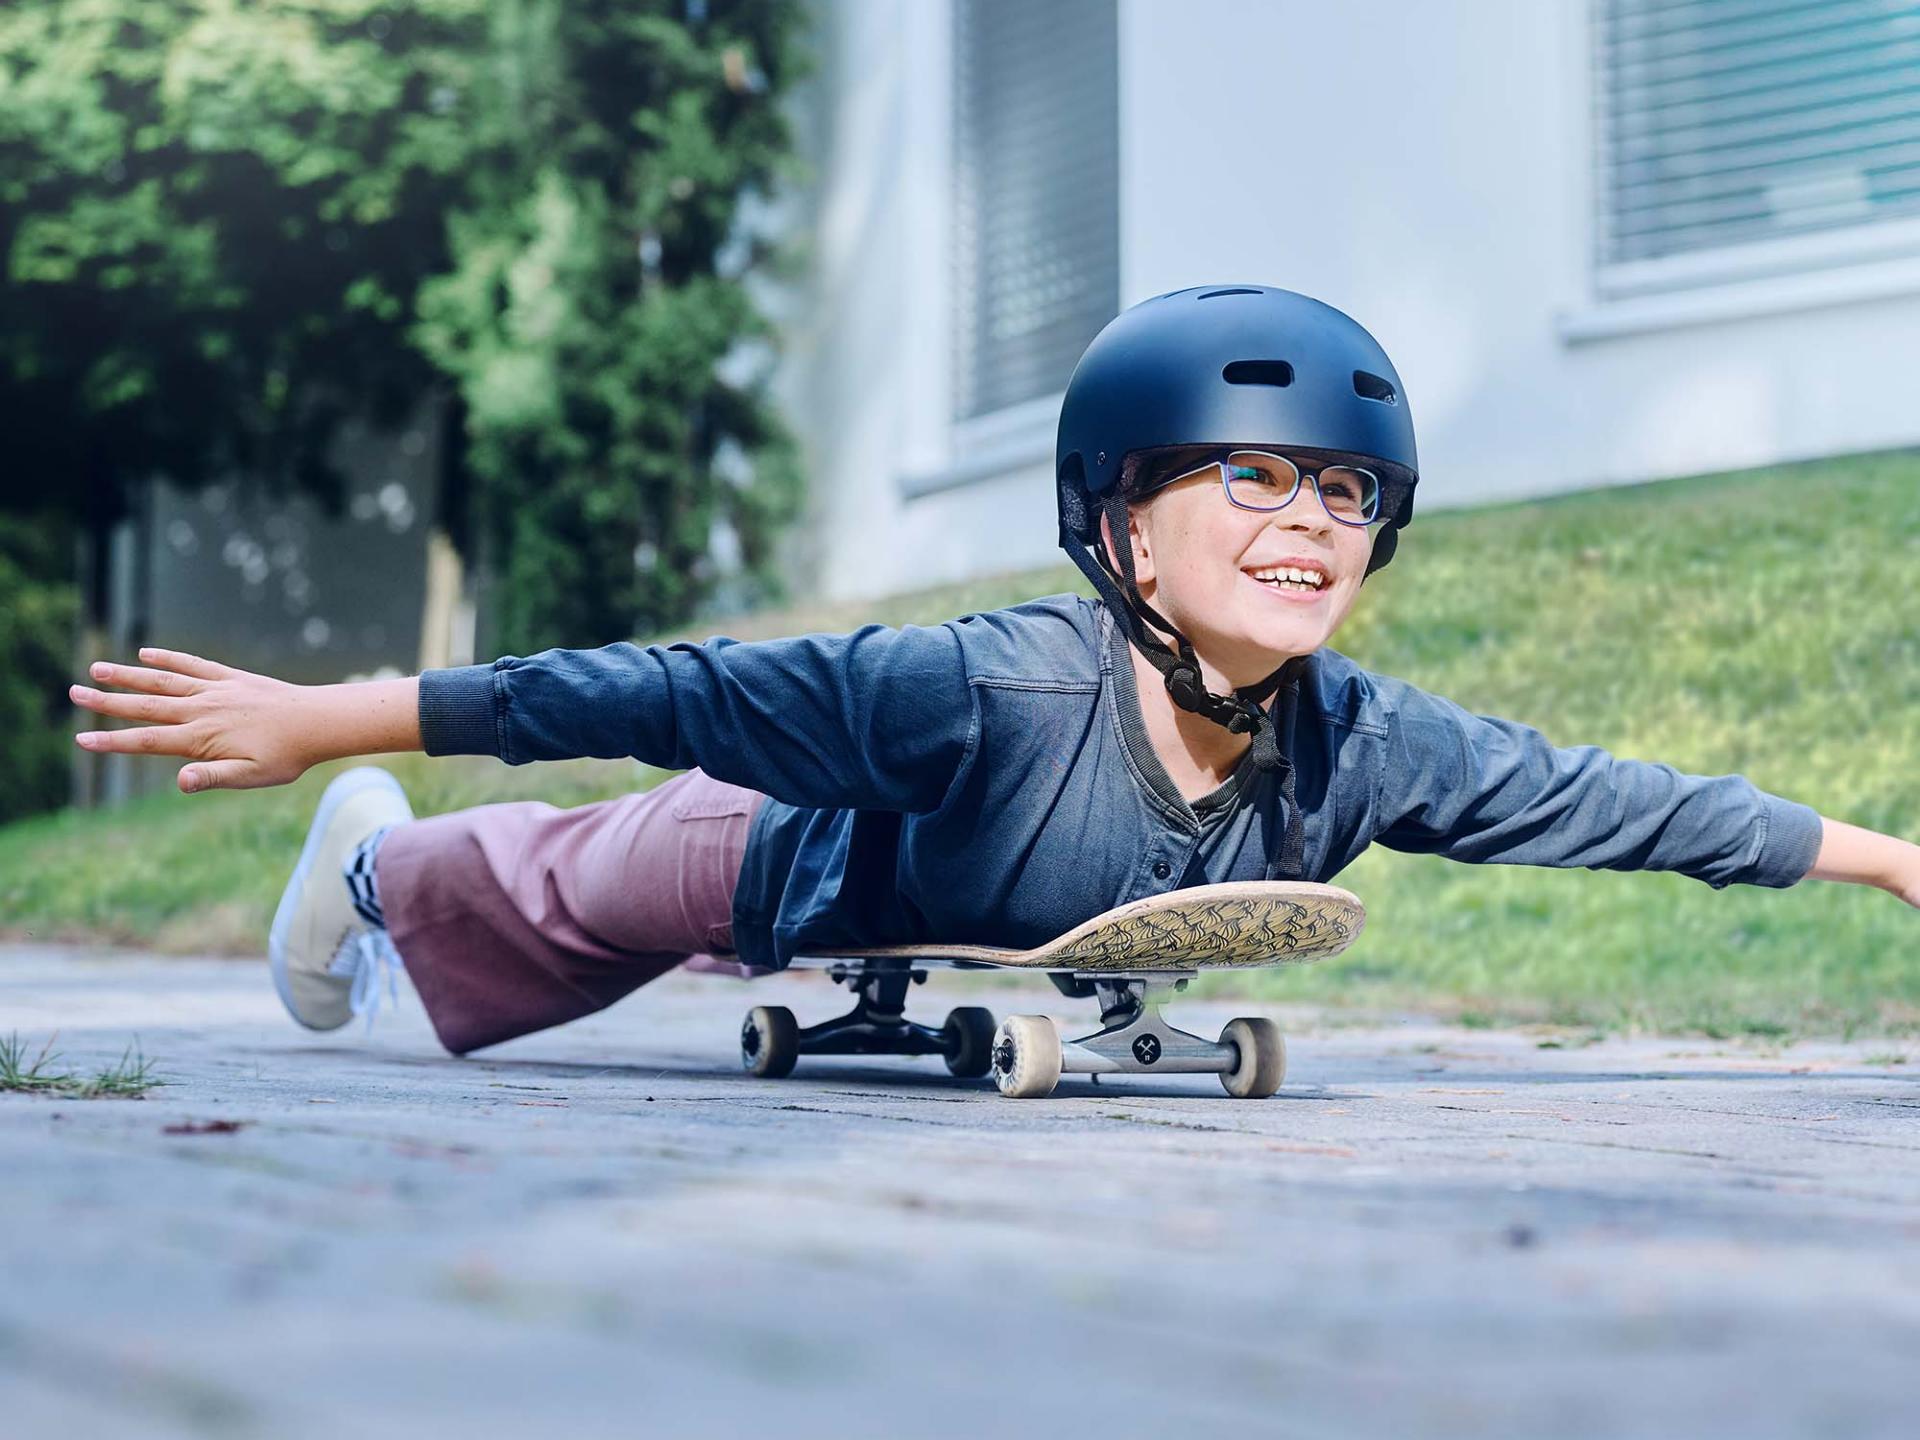 Een meisje met een helm en een bril rolt liggend op een skateboard de weg af en strekt haar armen uit.